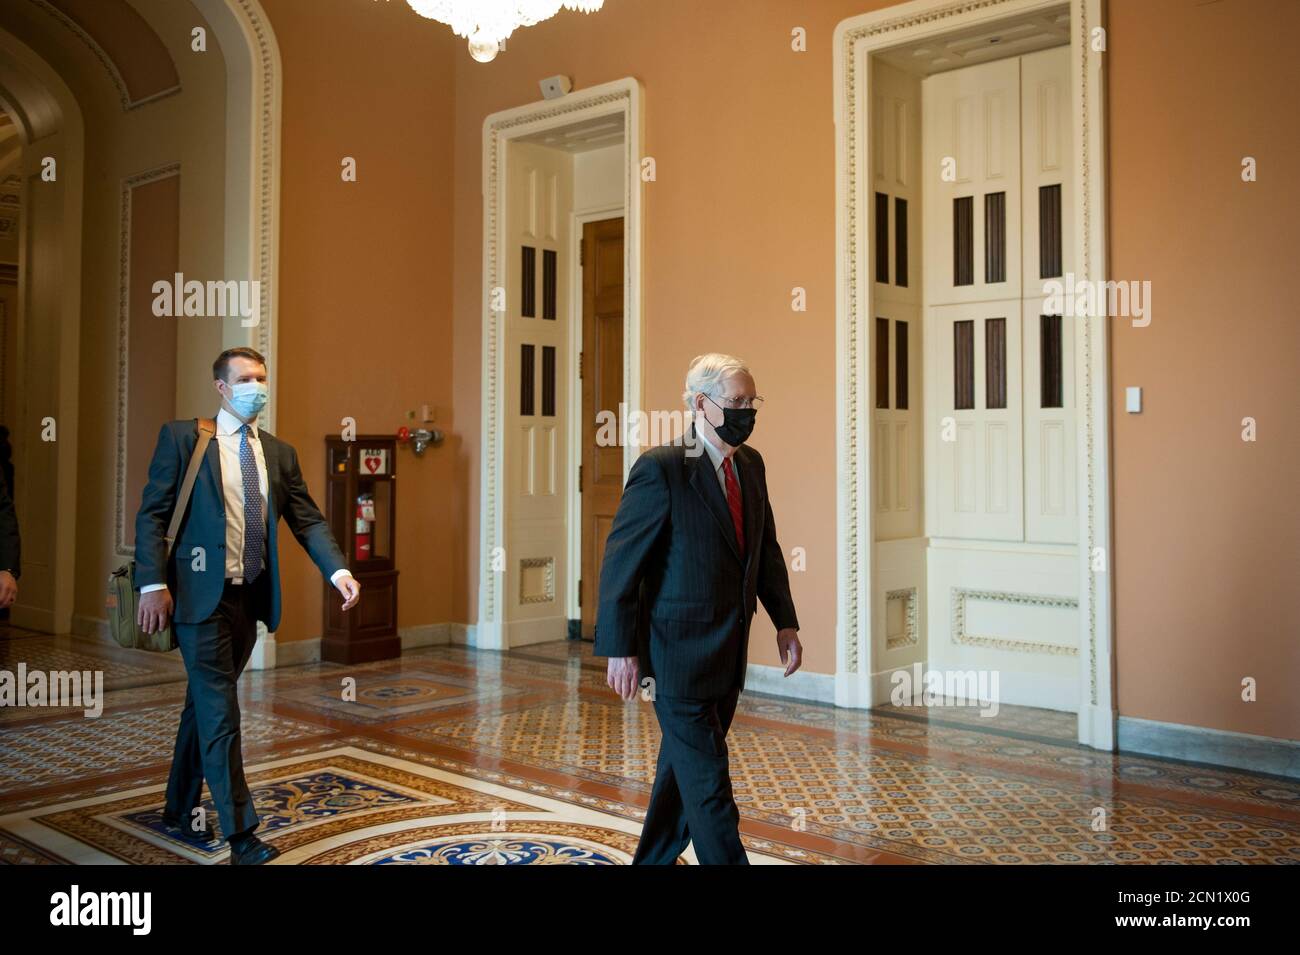 Mitch McConnell, chef de la majorité au Sénat des États-Unis (républicain du Kentucky), se rend à son bureau alors qu'il arrive pour la journée au Capitole des États-Unis à Washington, DC., le jeudi 17 septembre 2020. Crédit : Rod Lamkey/CNP/MediaPunch Banque D'Images